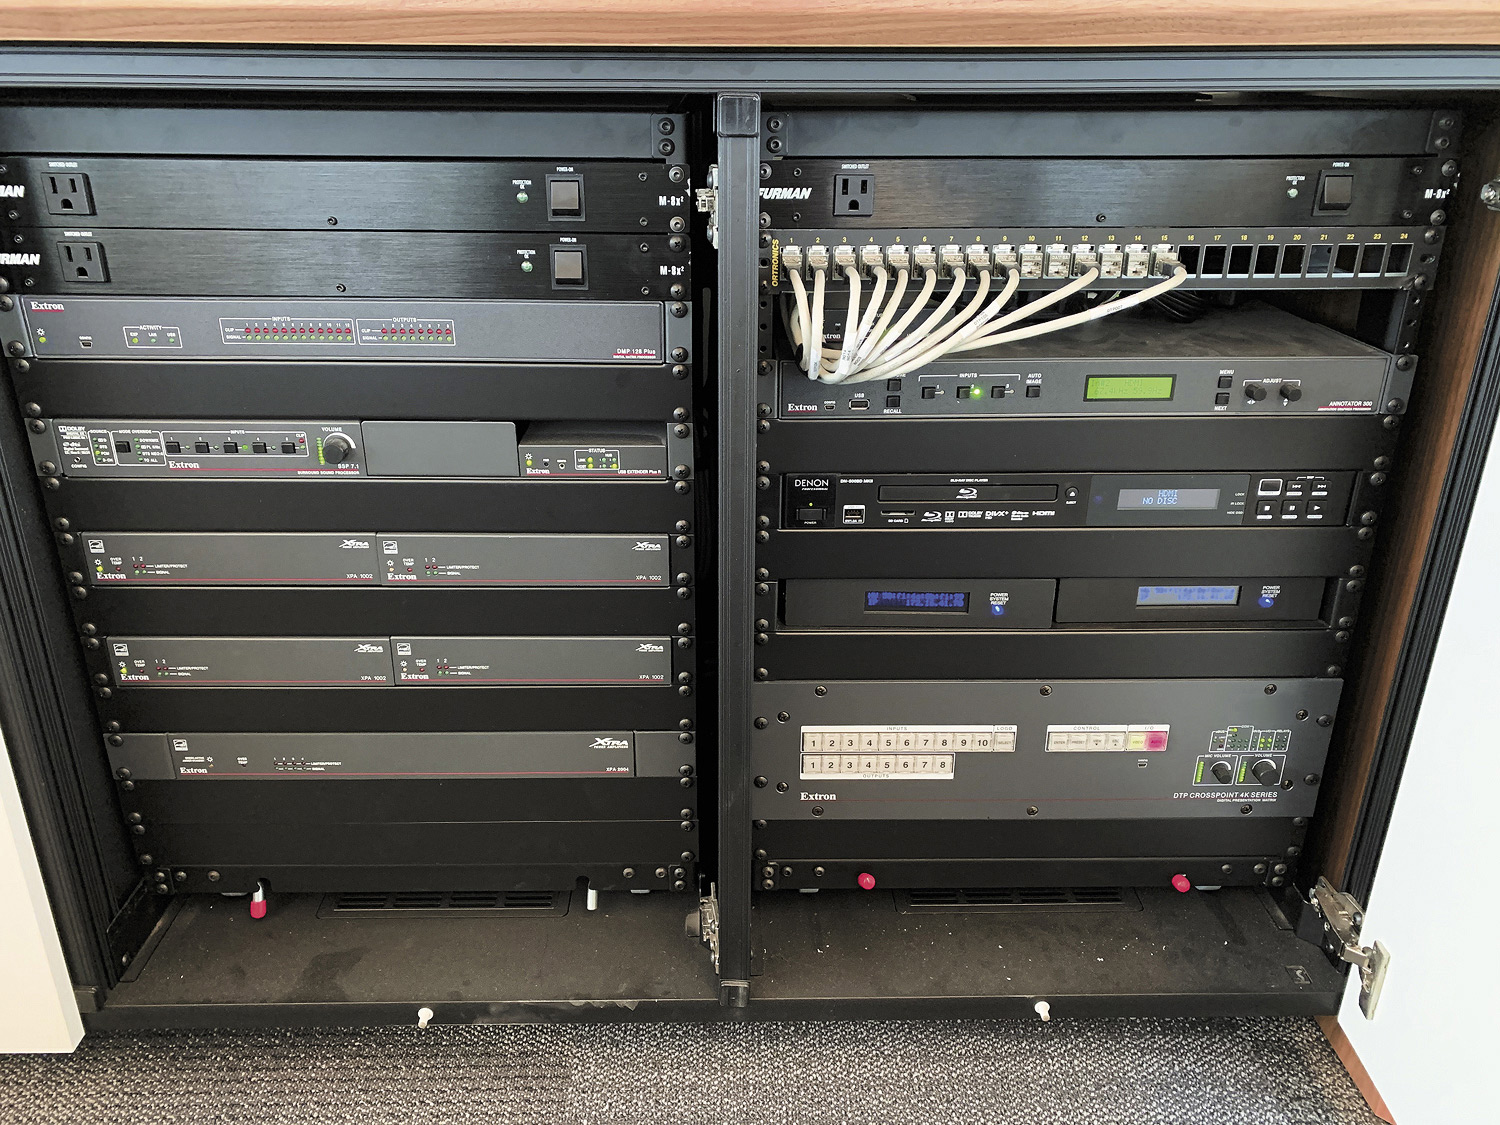 El armario de equipamiento de la clase aloja fuentes locales, junto con varios componentes de audio, vídeo y control de Extron como la matriz de conmutación para presentaciones DTP CrossPoint 4K.